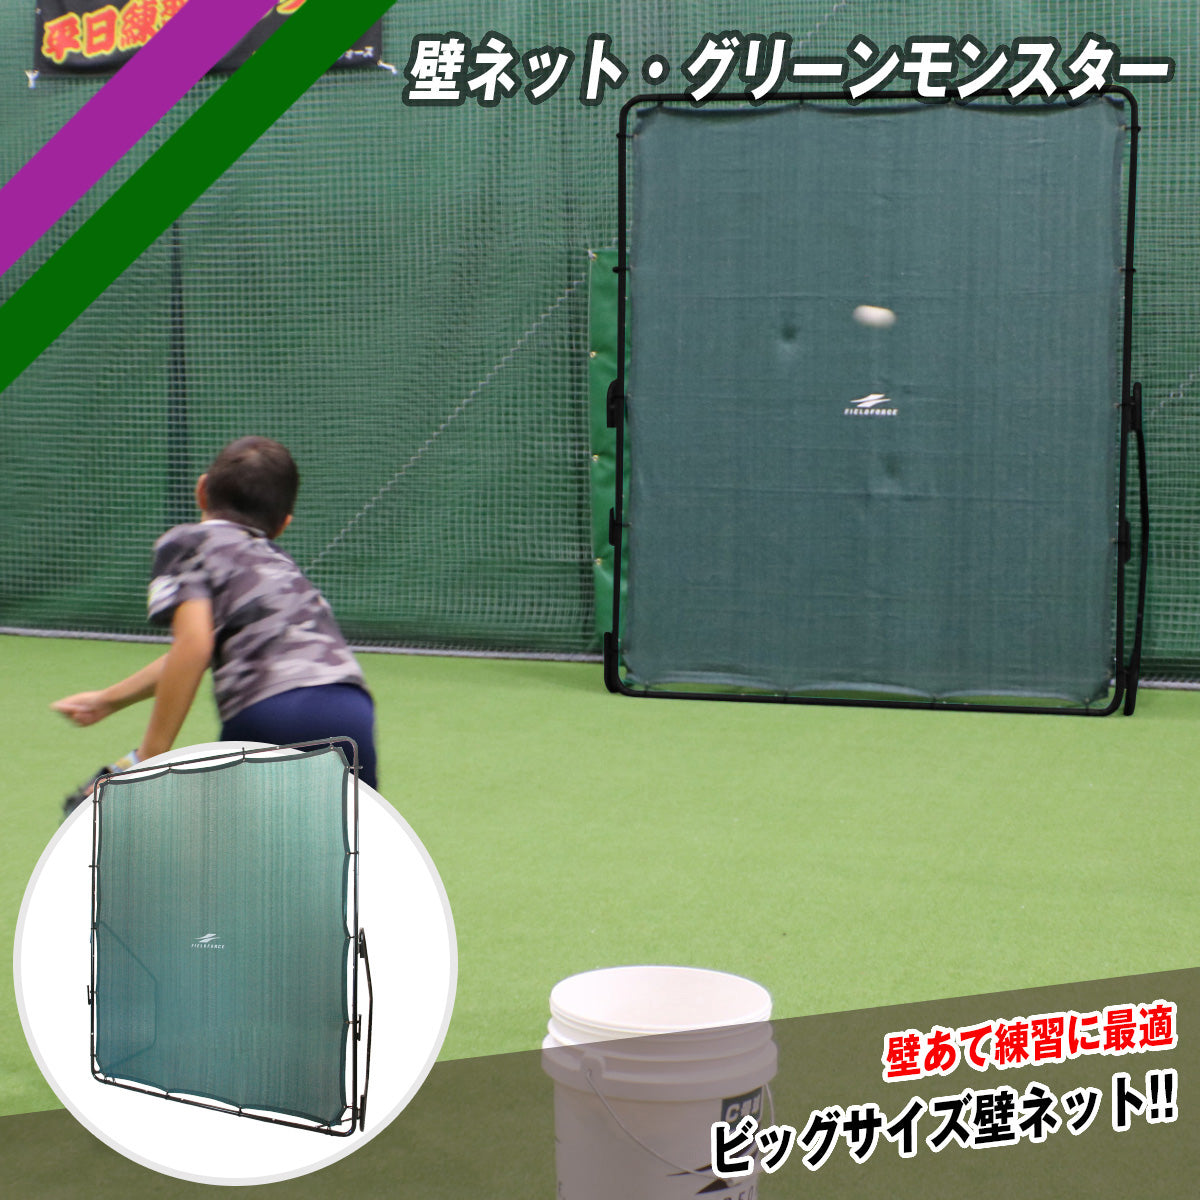 フィールドフォース 壁ネット 投球練習 野球 軟式検討させて頂きます 